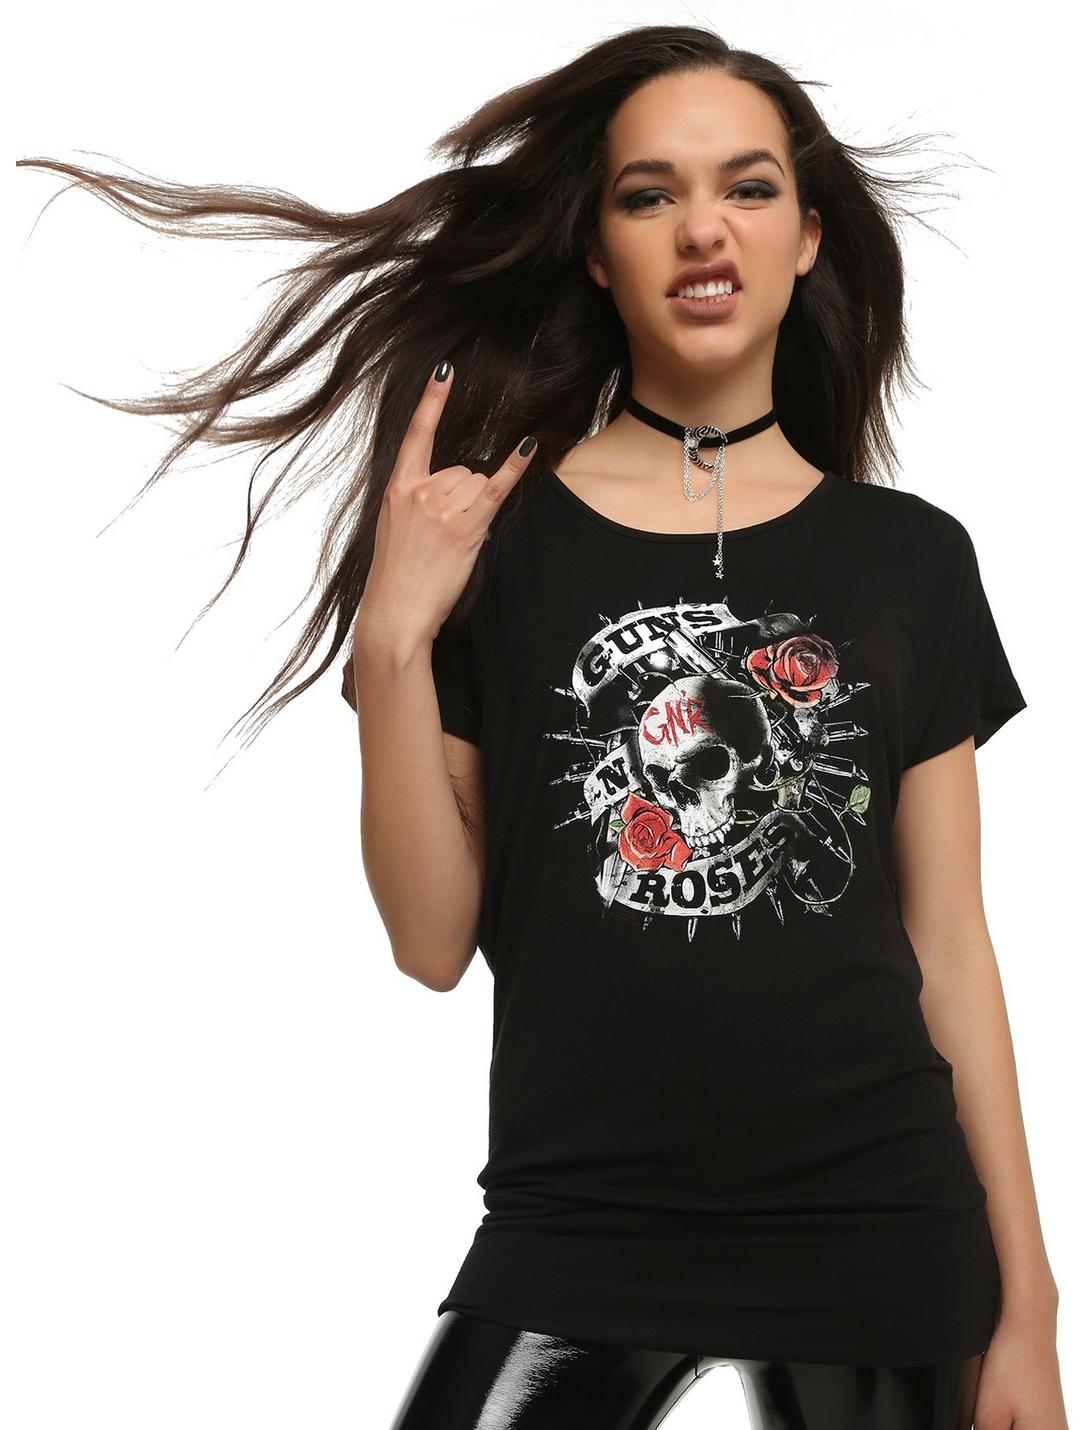 Guns N' Roses Skull GNR Girls Dolman Sleeve Top, BLACK, hi-res